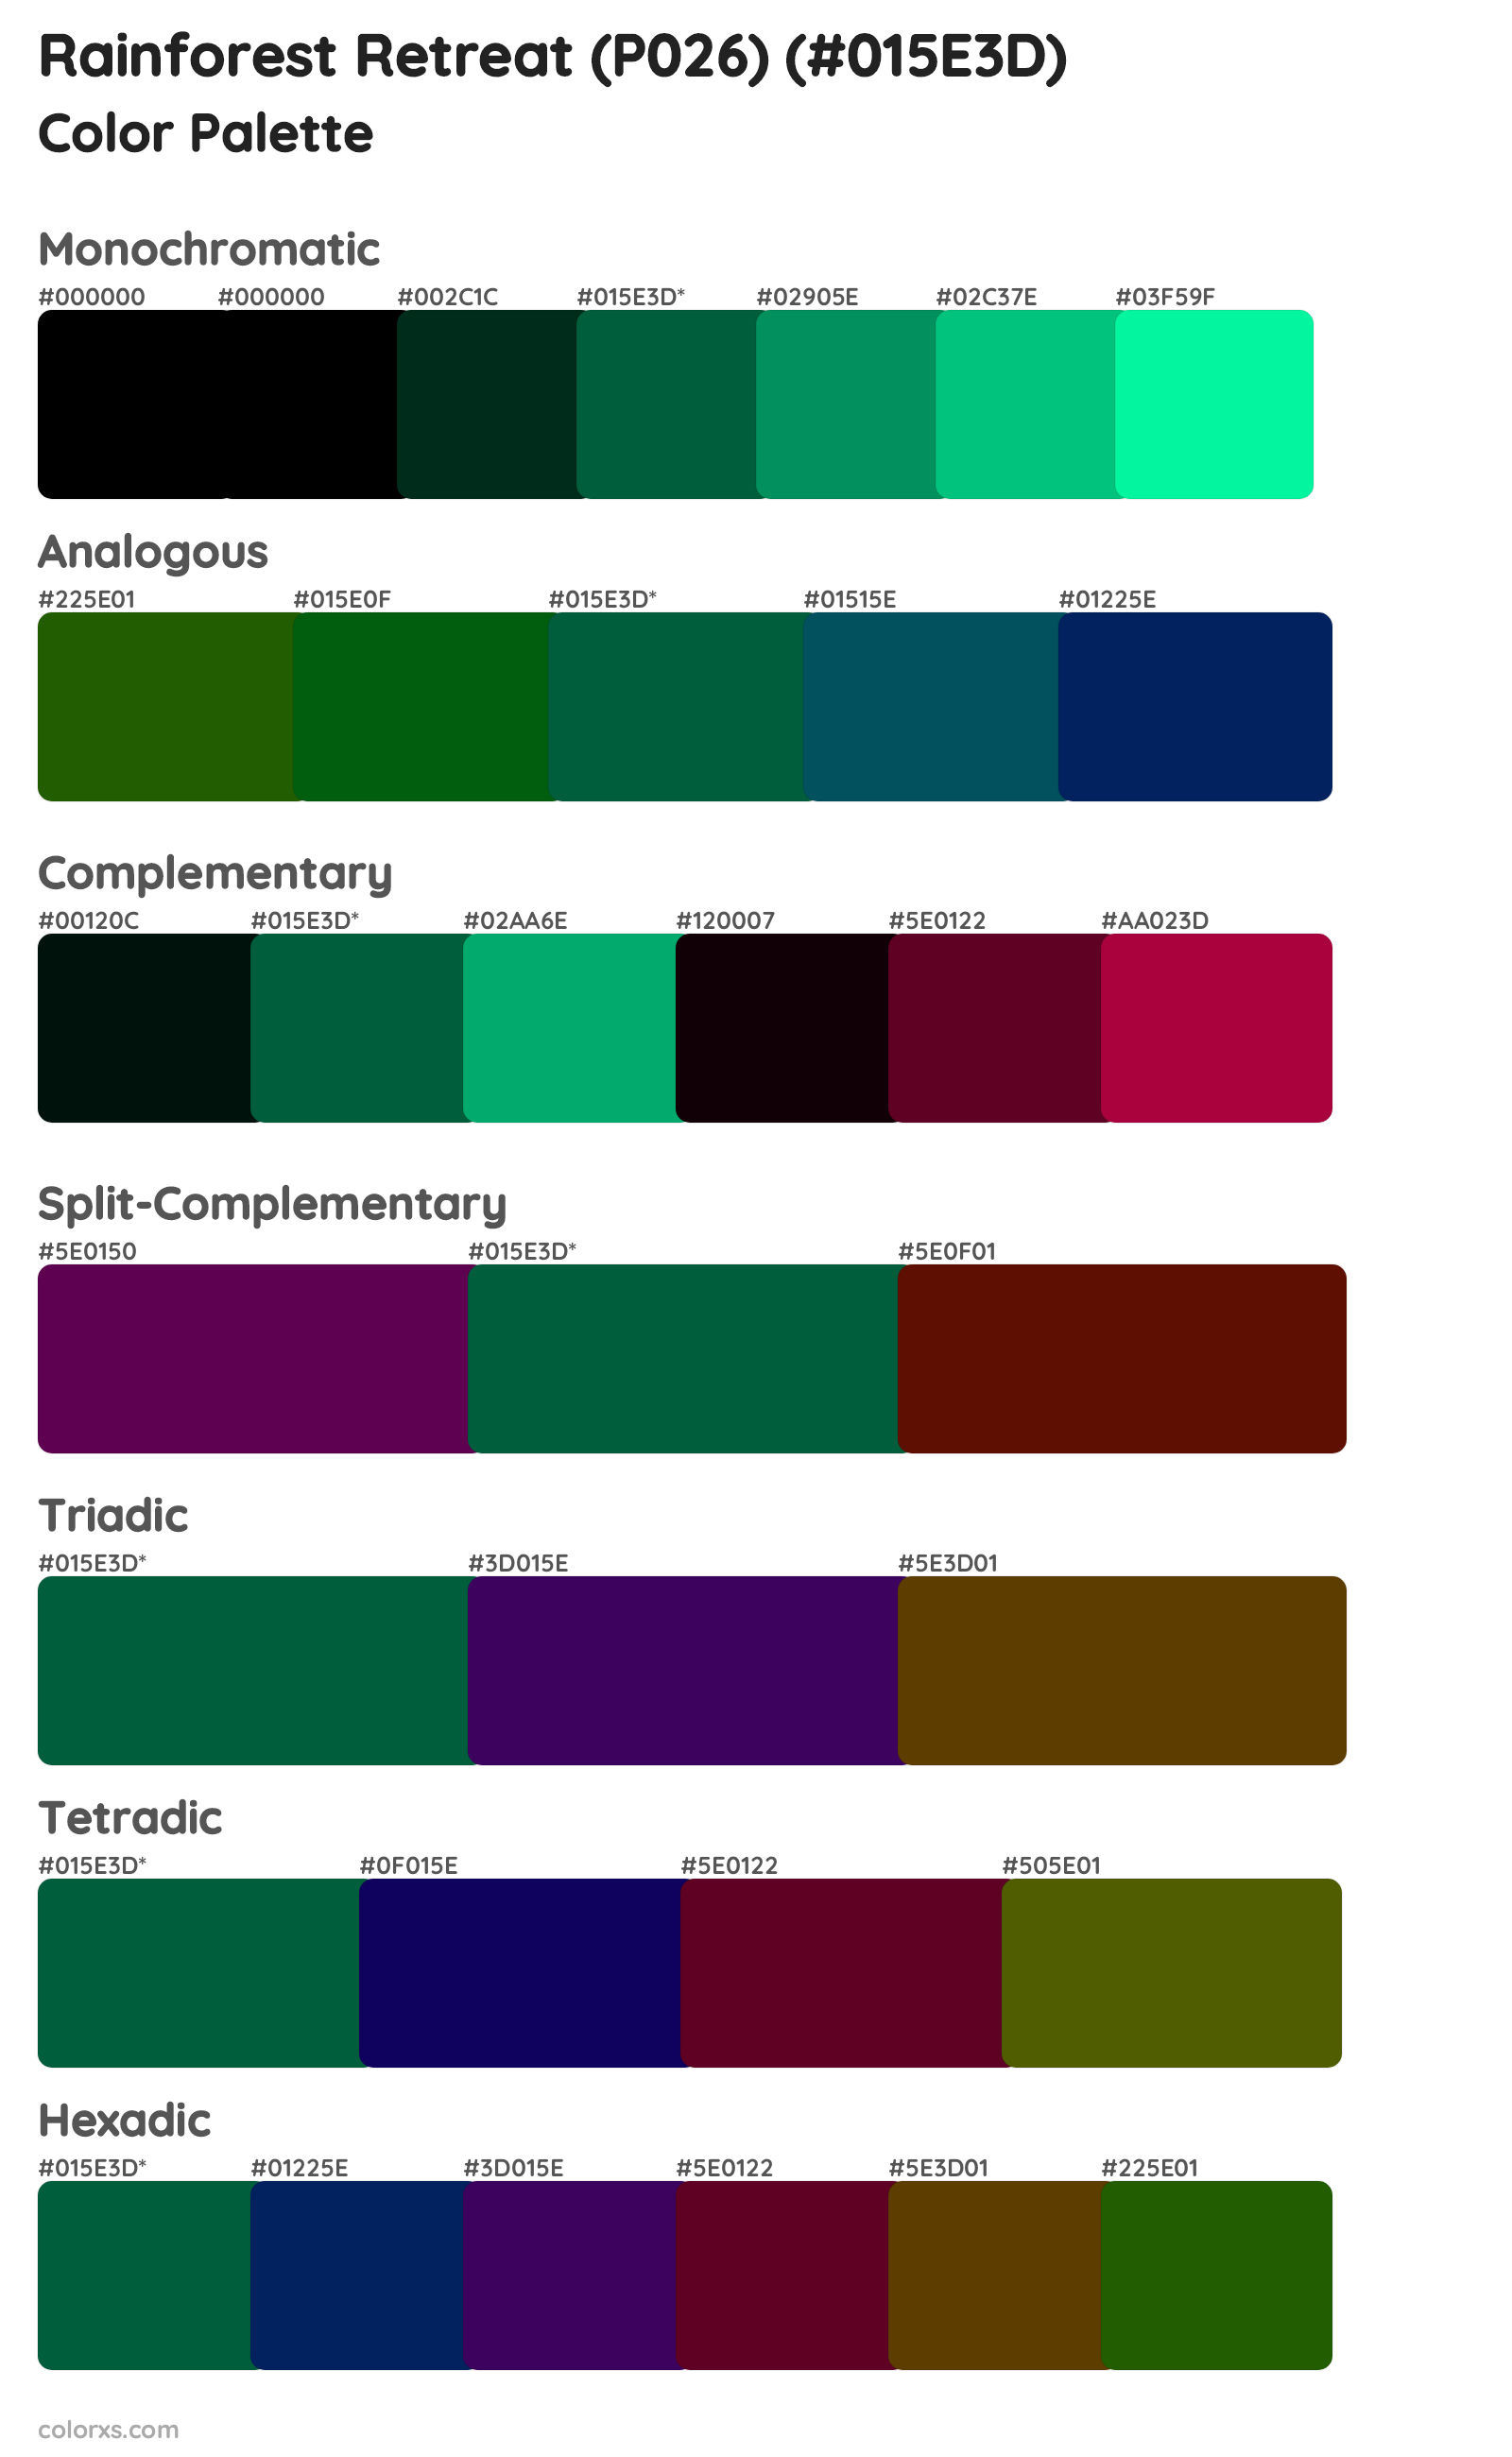 Rainforest Retreat (P026) Color Scheme Palettes